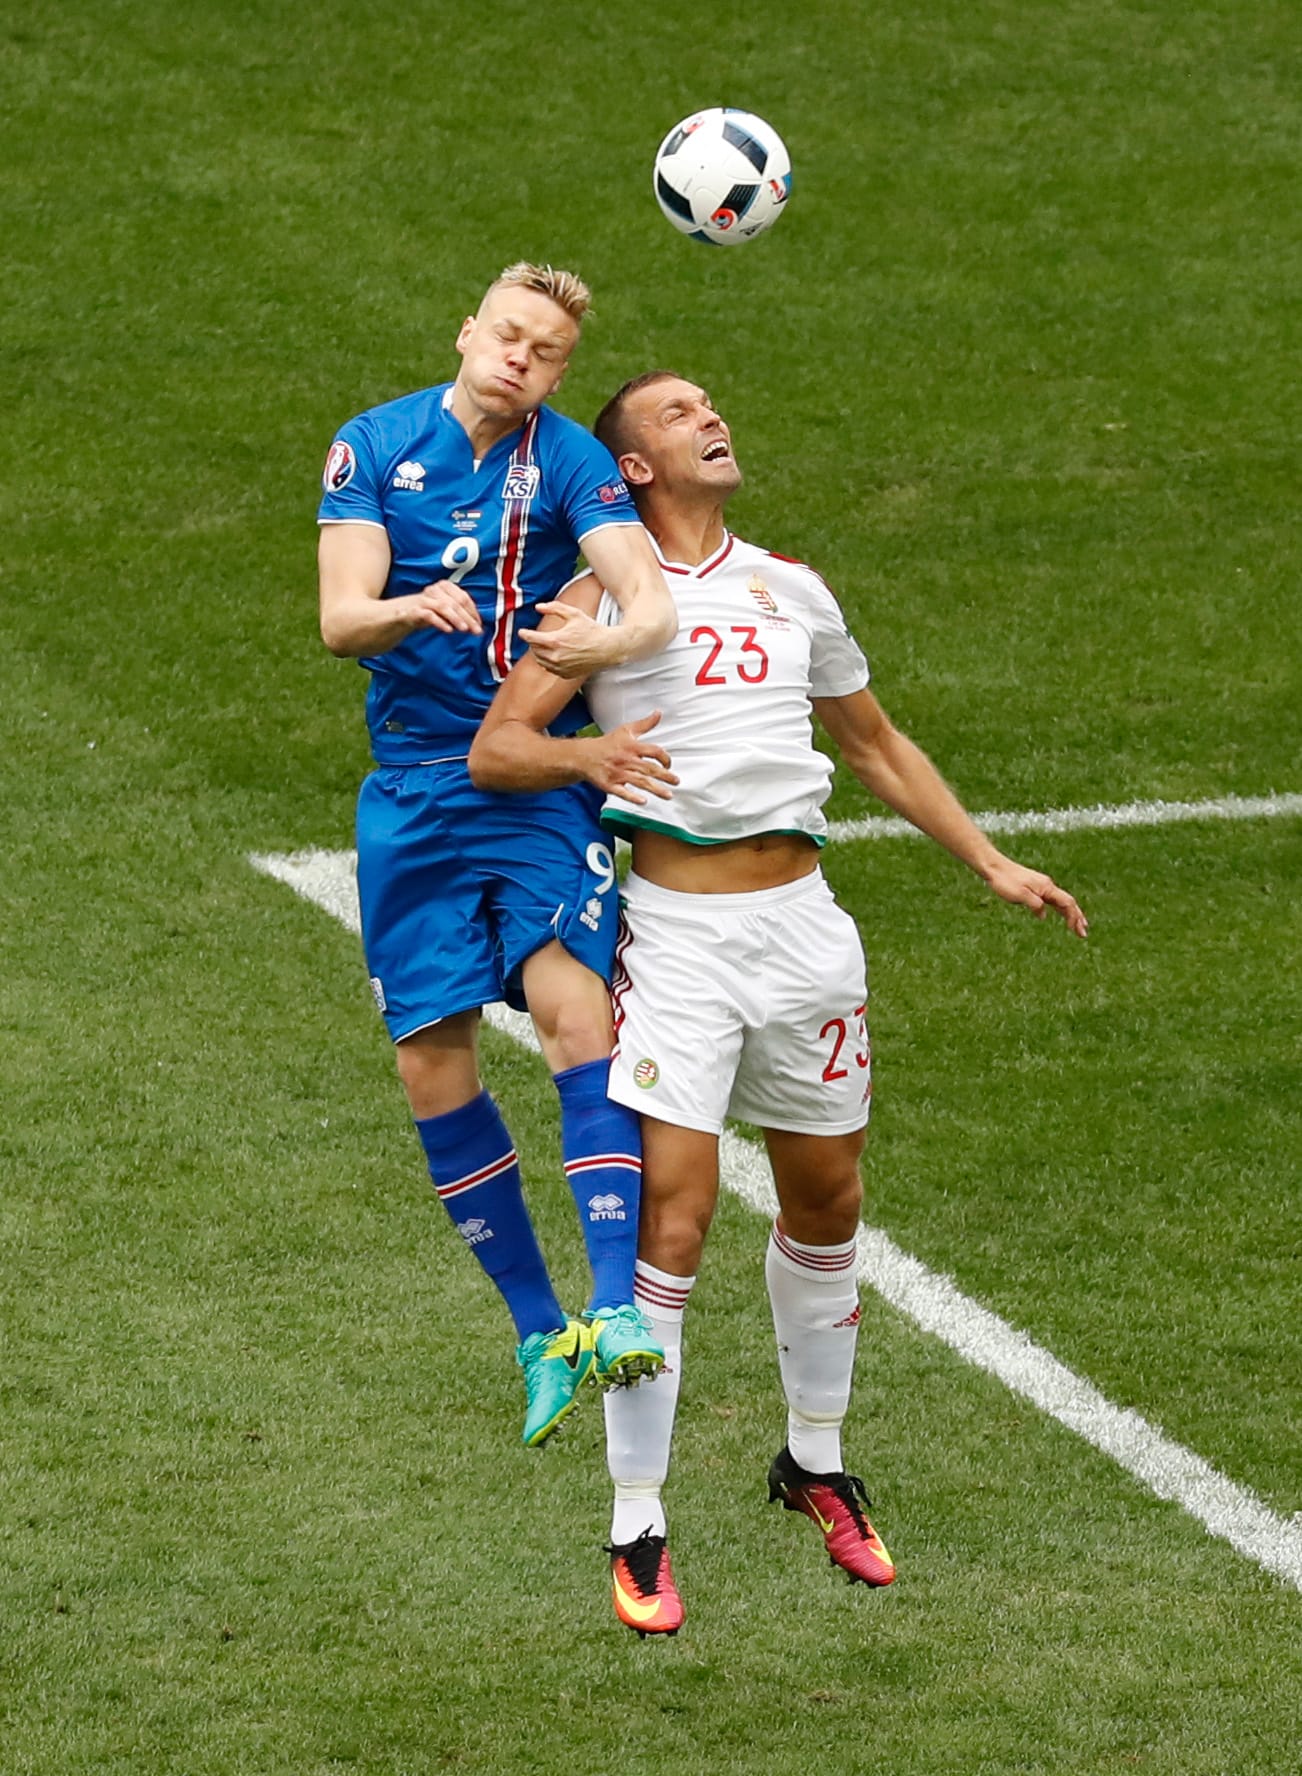 Dann geht es los! Die Partie beginnt gemächlich, Ungarn hat mehr Ballbesitz und versucht, Akzente zu setzen. Hier steigt Islands Kolbeinn Sigthorsson (li.) gegen den Ungarn Roland Juhasz zum Kopfball hoch.